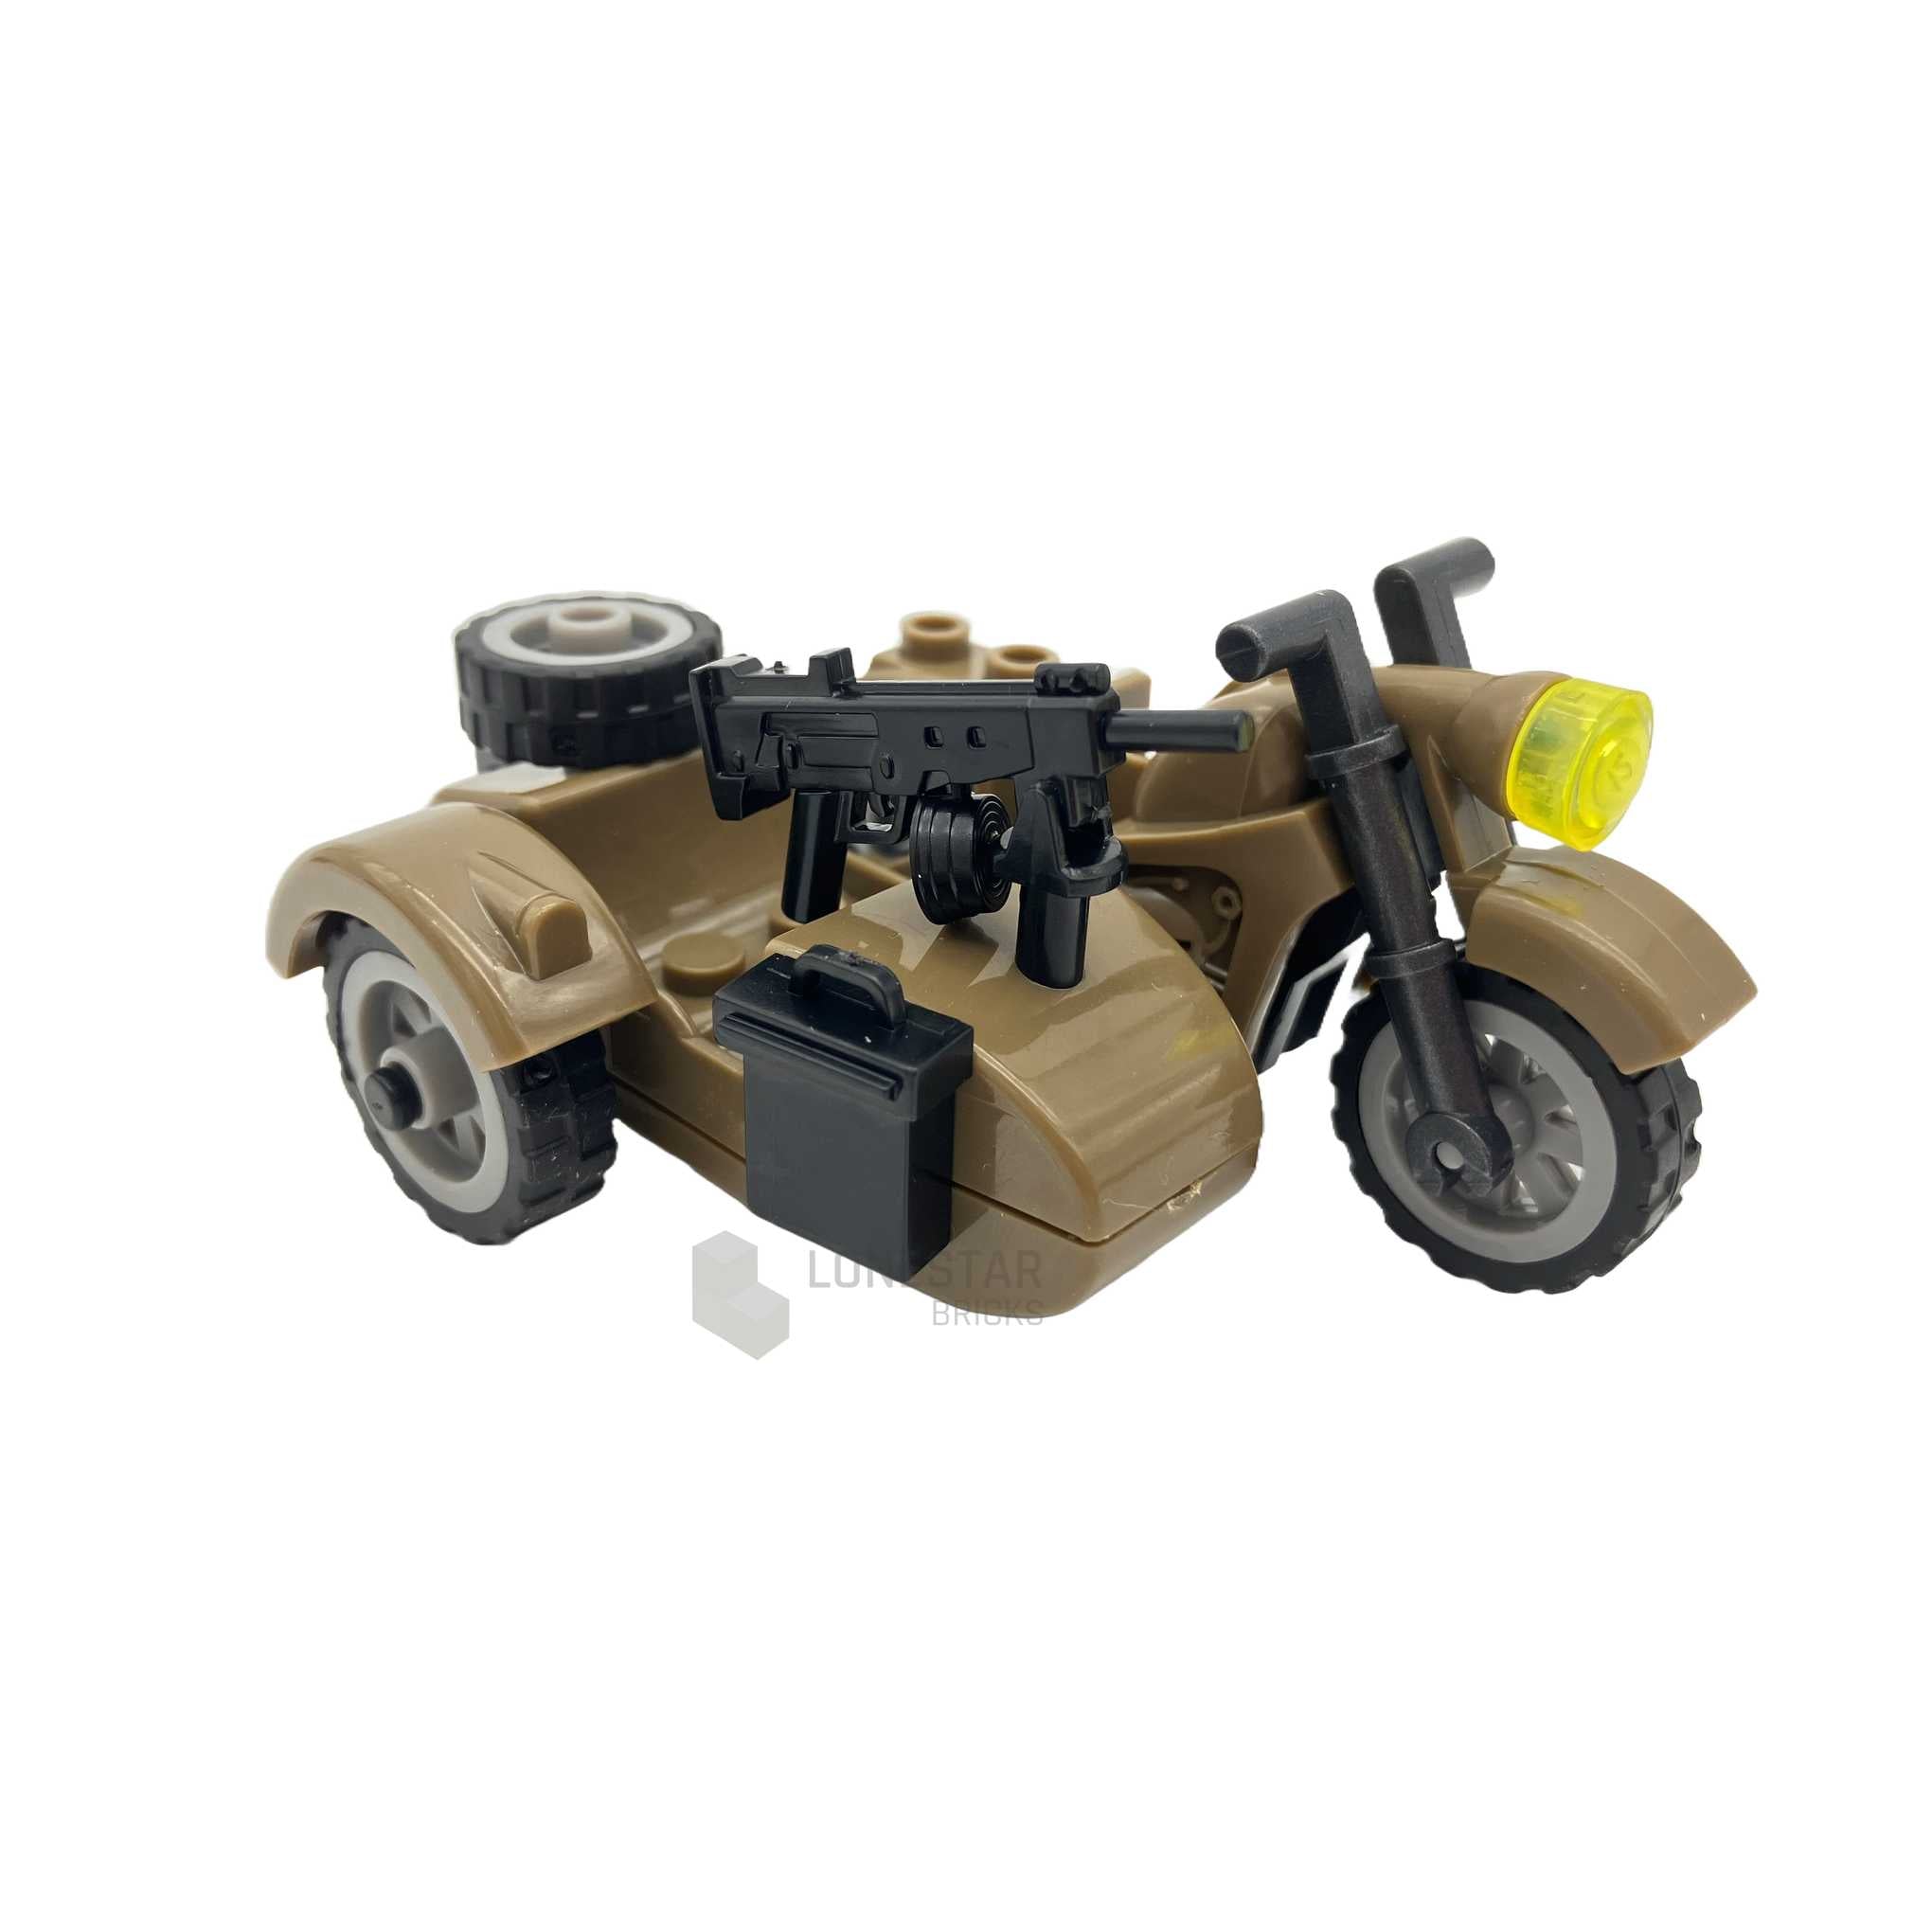 LB-70038 - Motorrad mit Beiwagen MG dark tan (Lonestar Bricks)